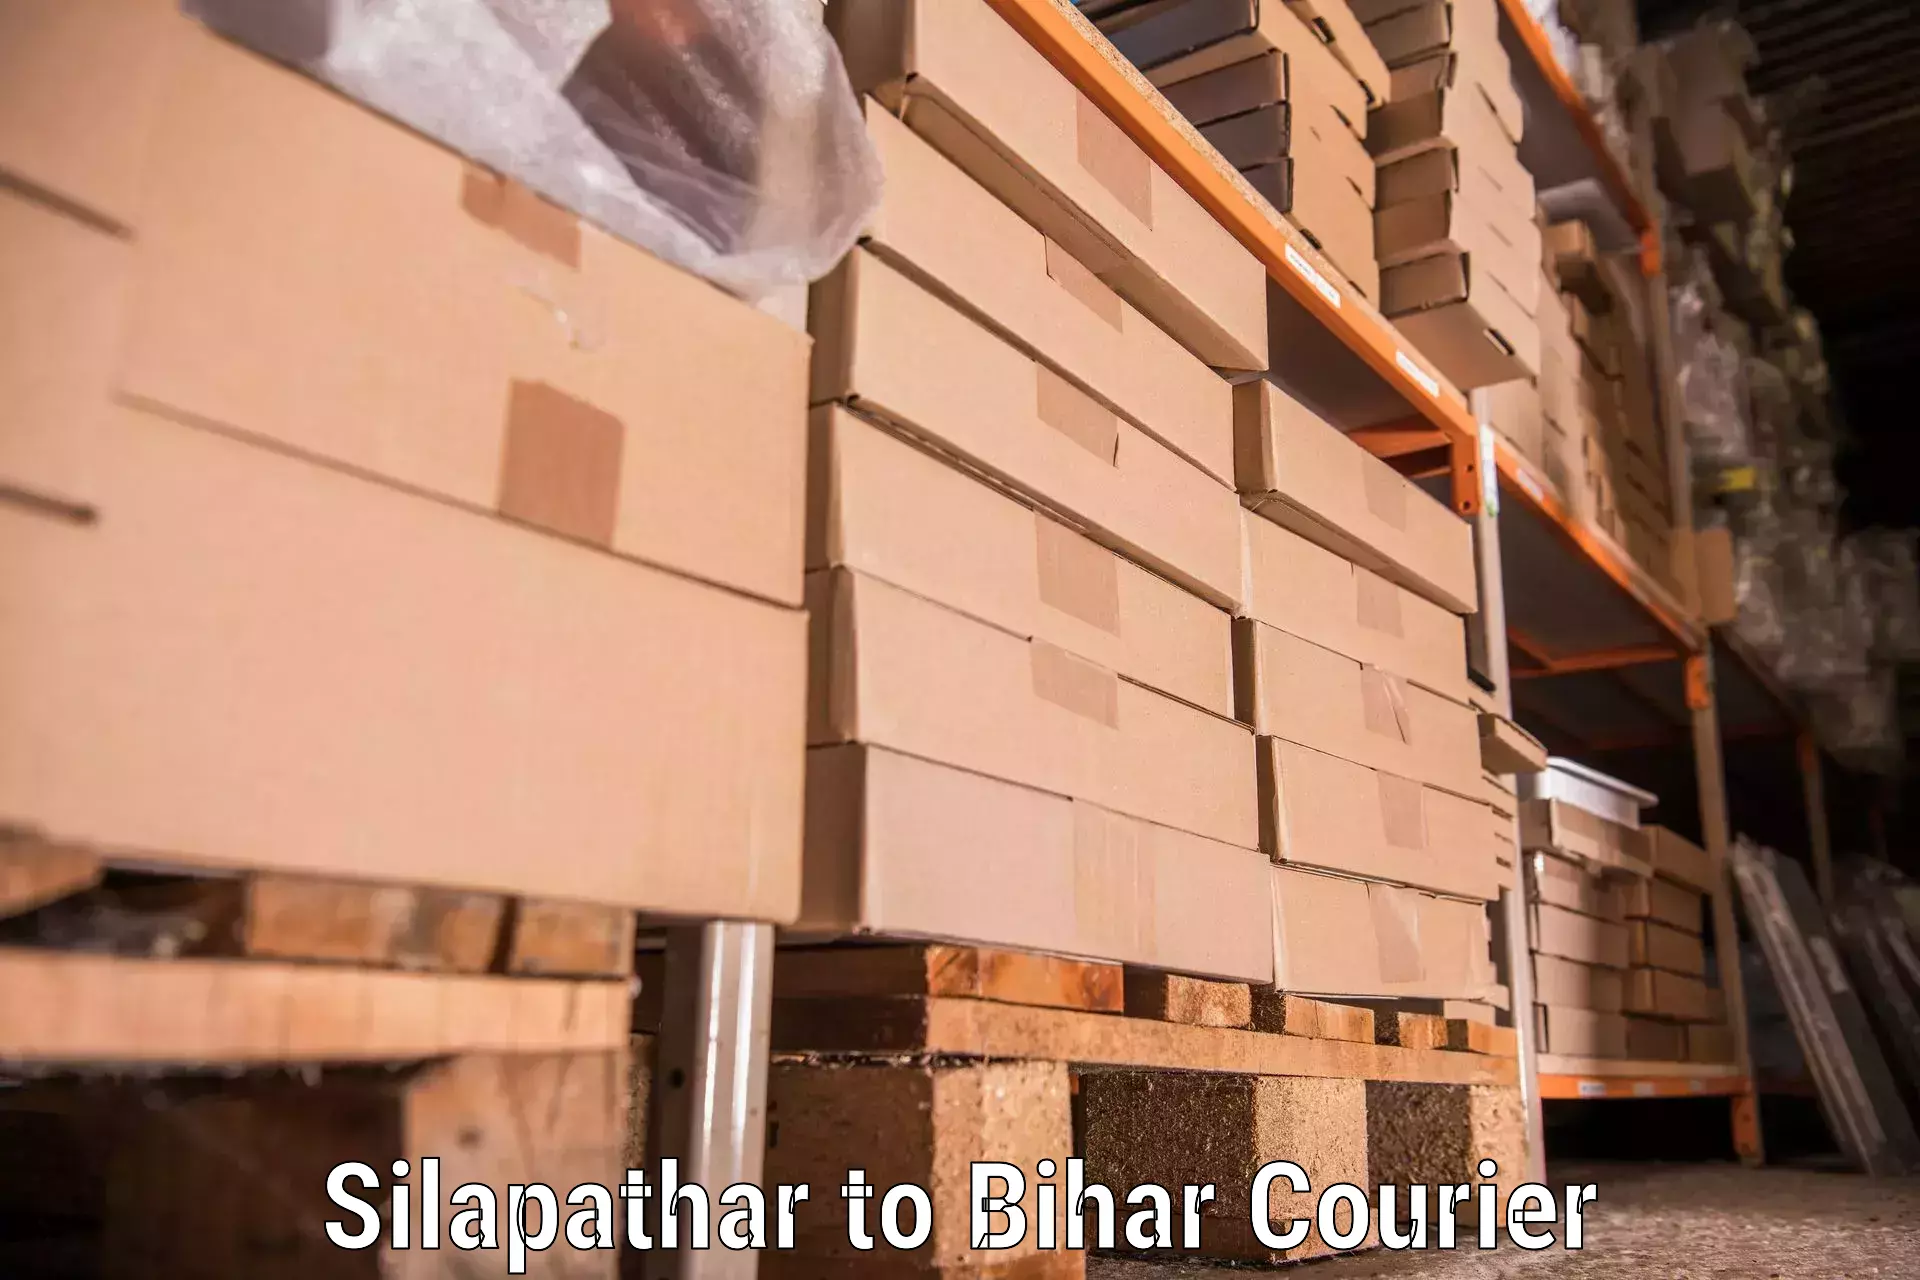 Reliable moving assistance Silapathar to Raghunathpur Buxar